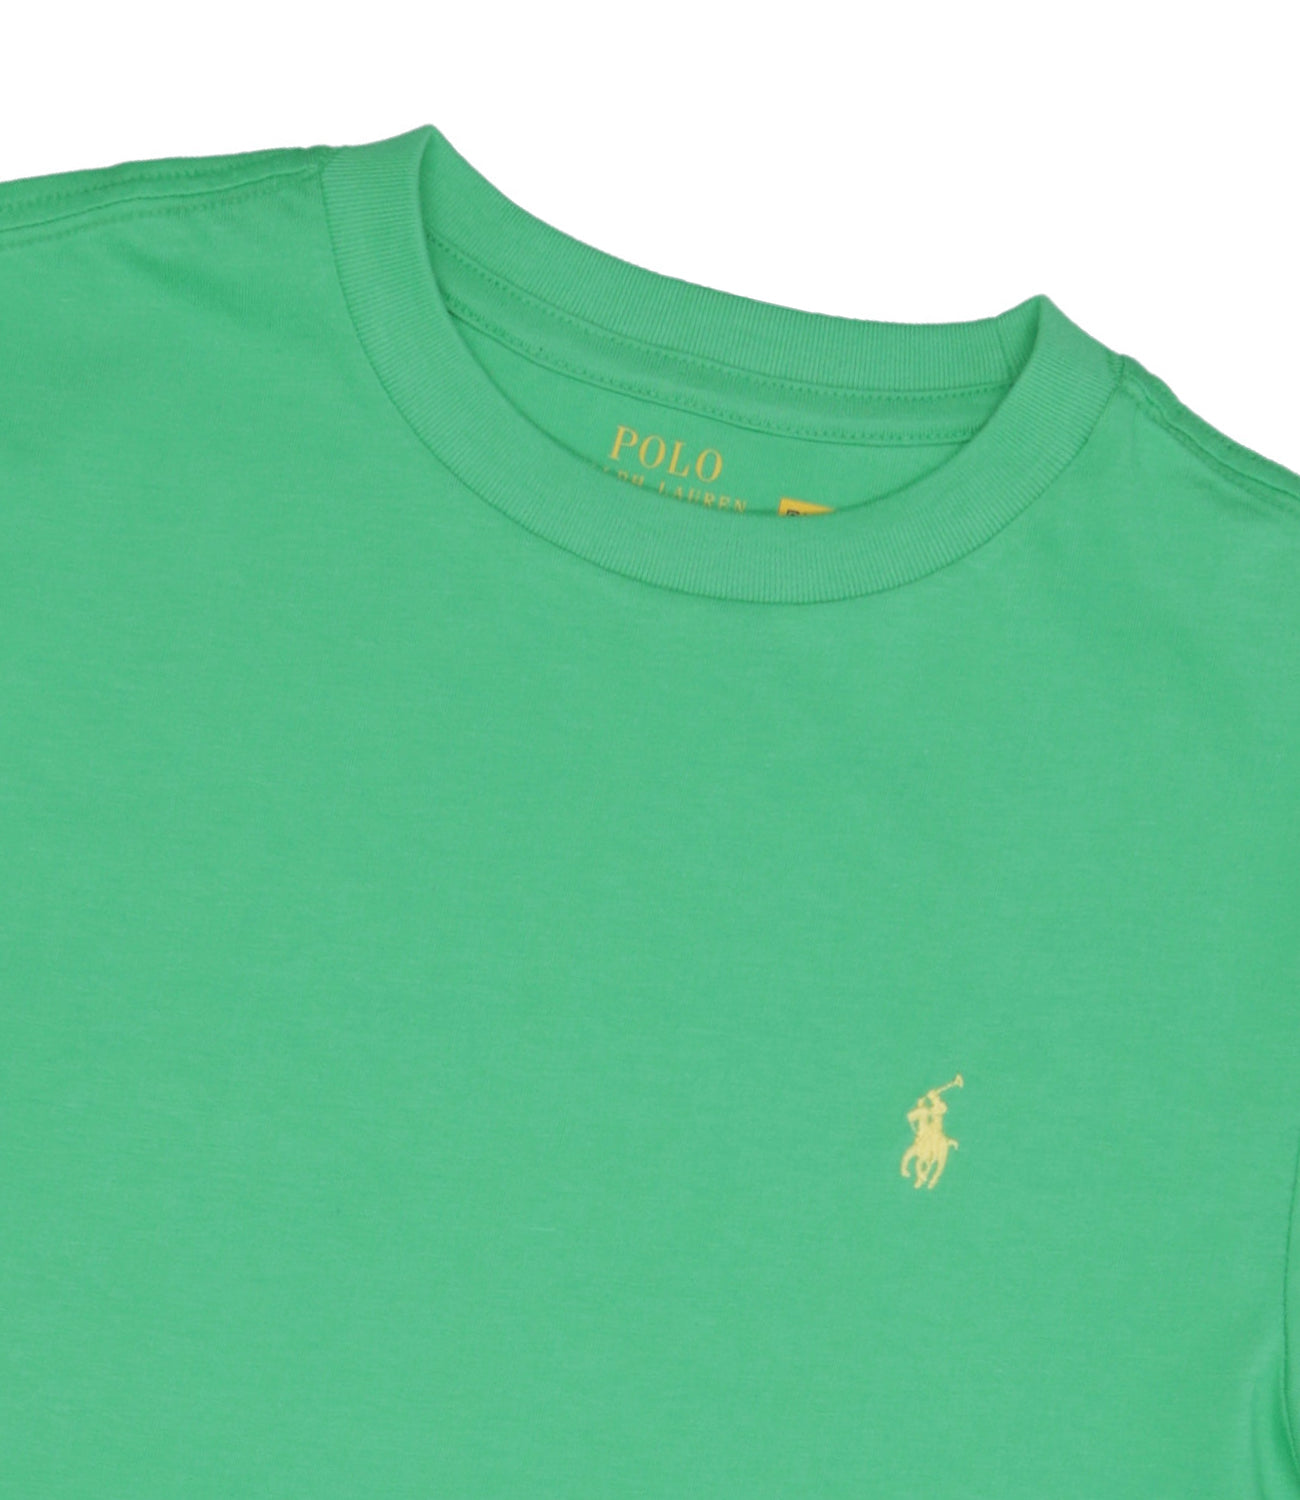 Ralph Lauren Childrenswear | T-Shirt Green